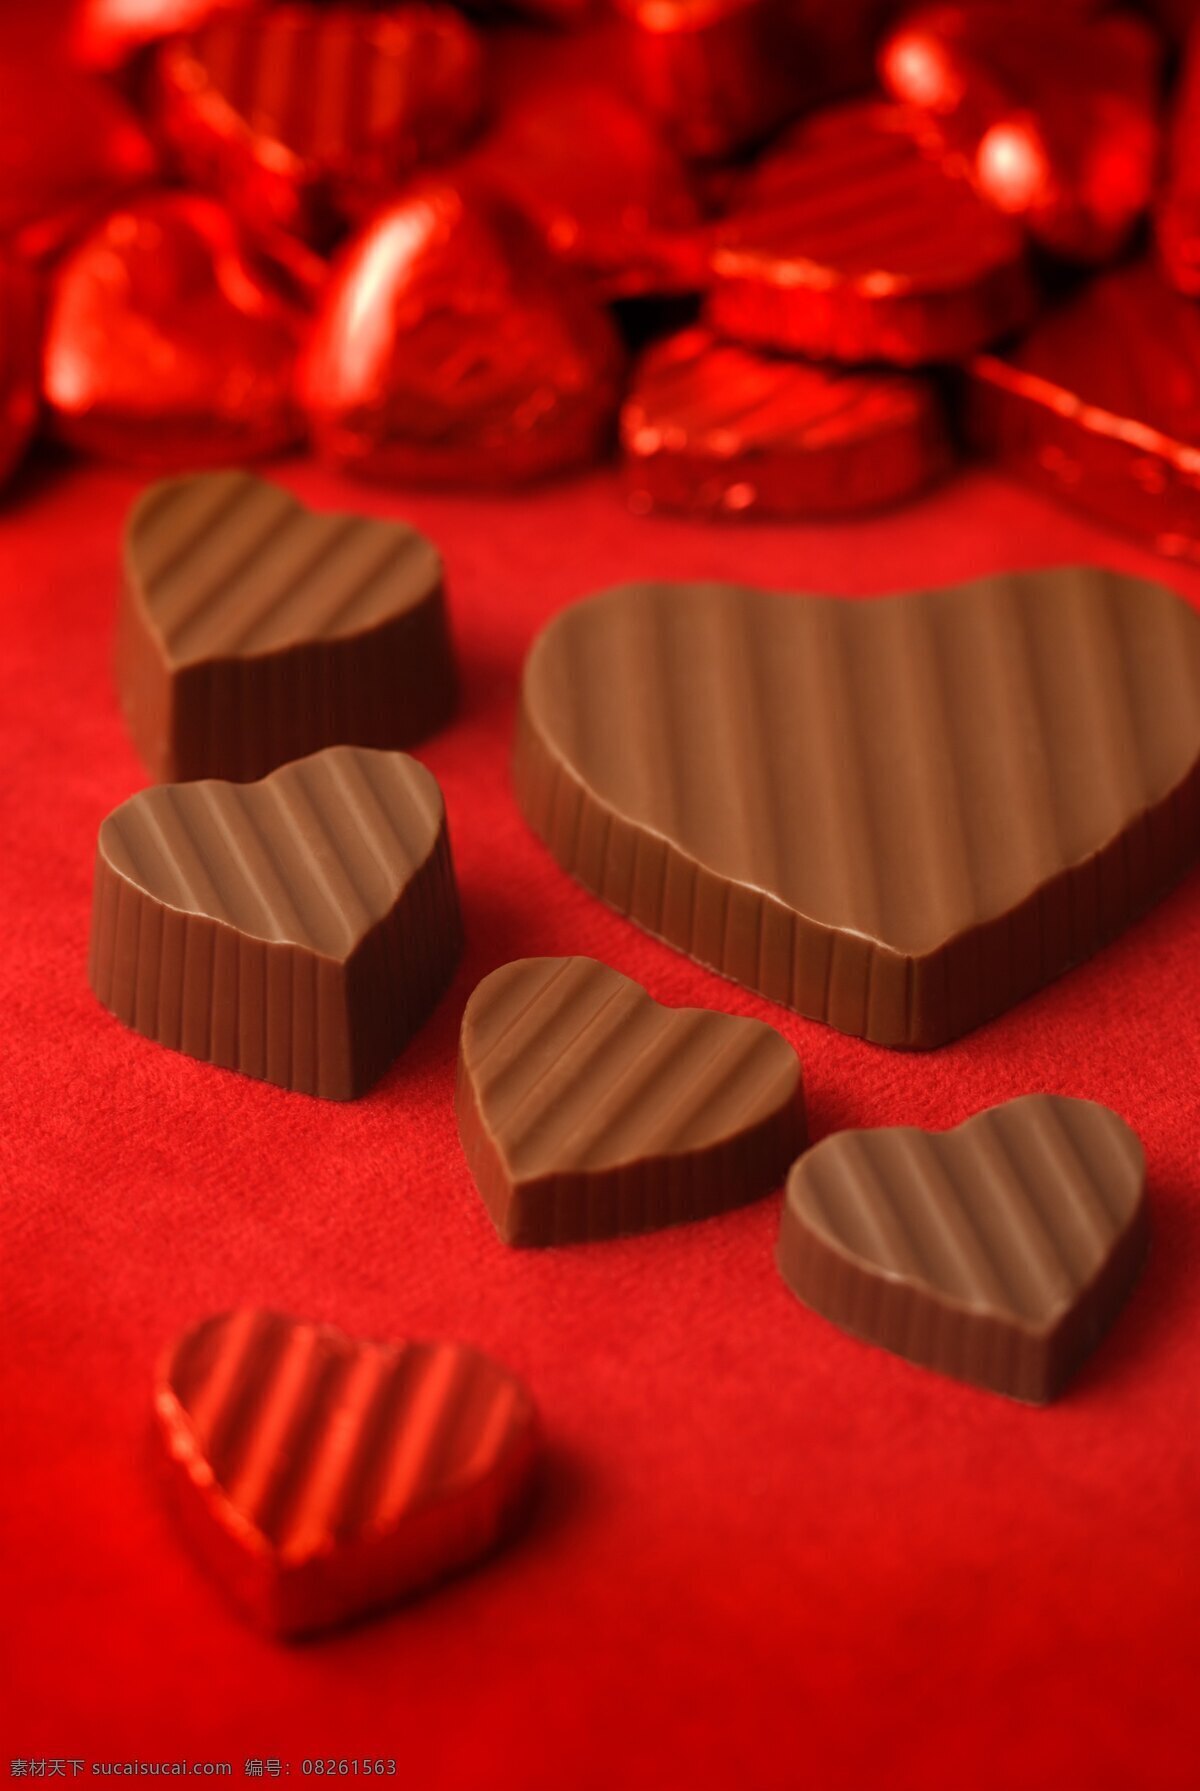 心形巧克力 心形礼盒 首饰盒 爱心礼盒 糖果 甜 装饰 巧克力 花式巧克力 手工巧克力 彩色巧克力